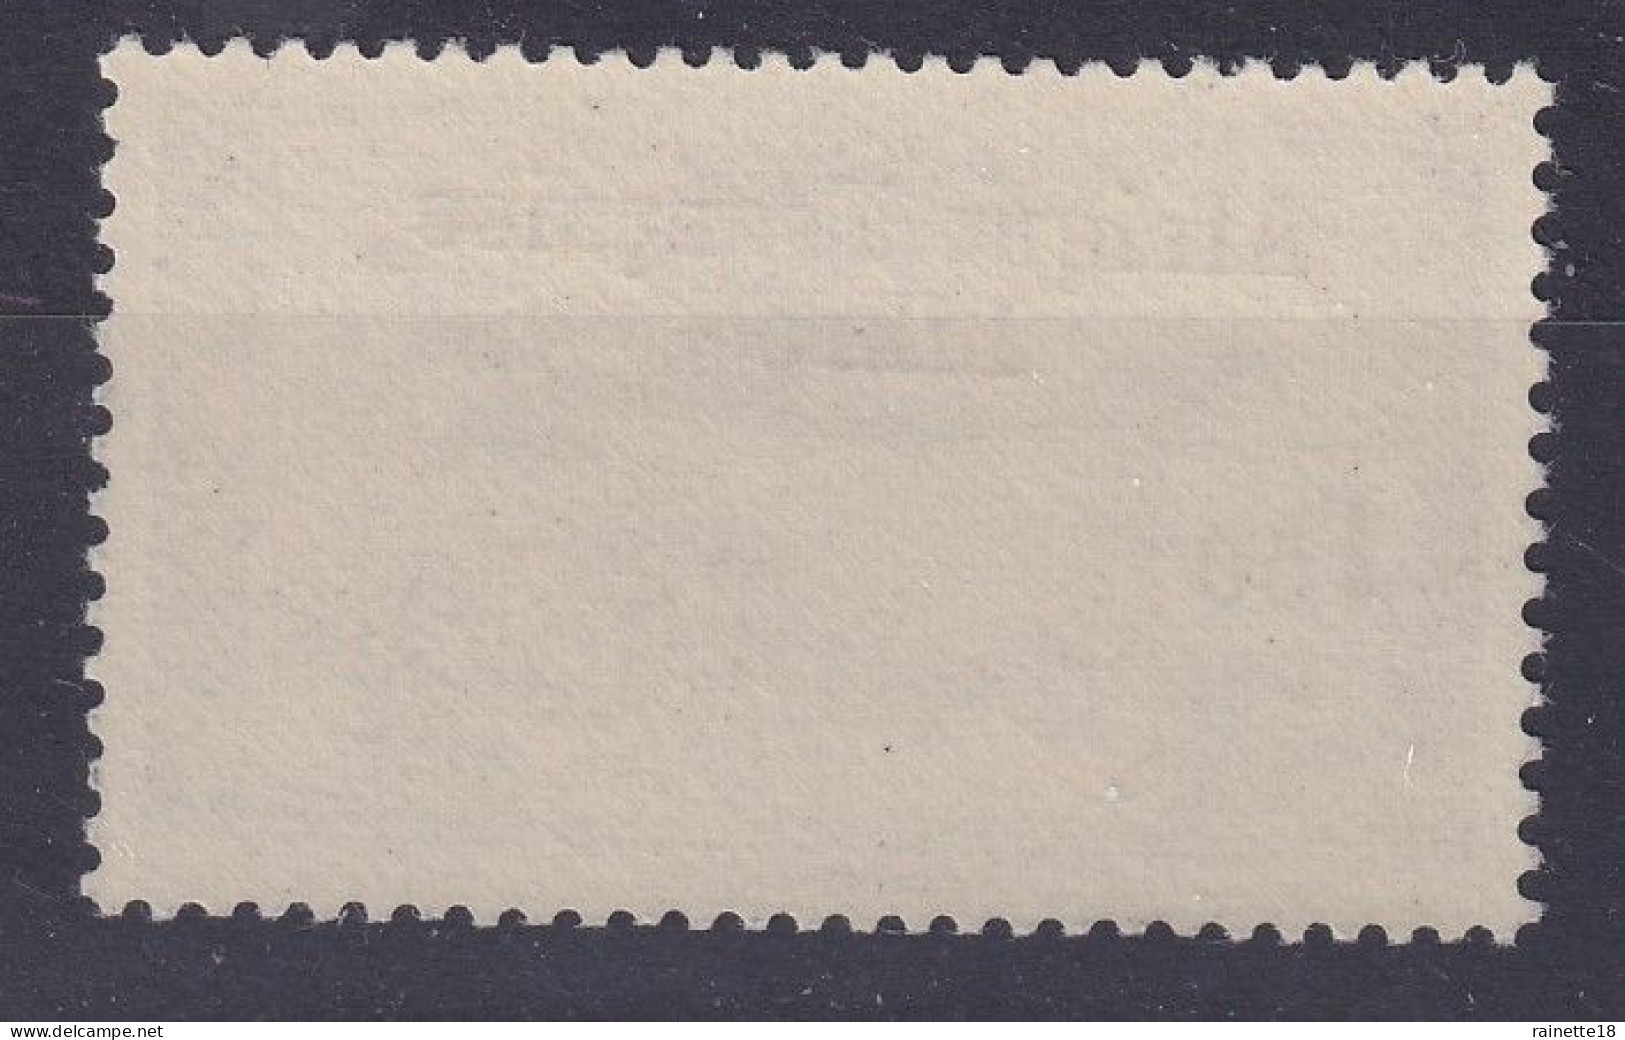 A.E.F Afrique équatoriale Française    PA  14  ** - Unused Stamps